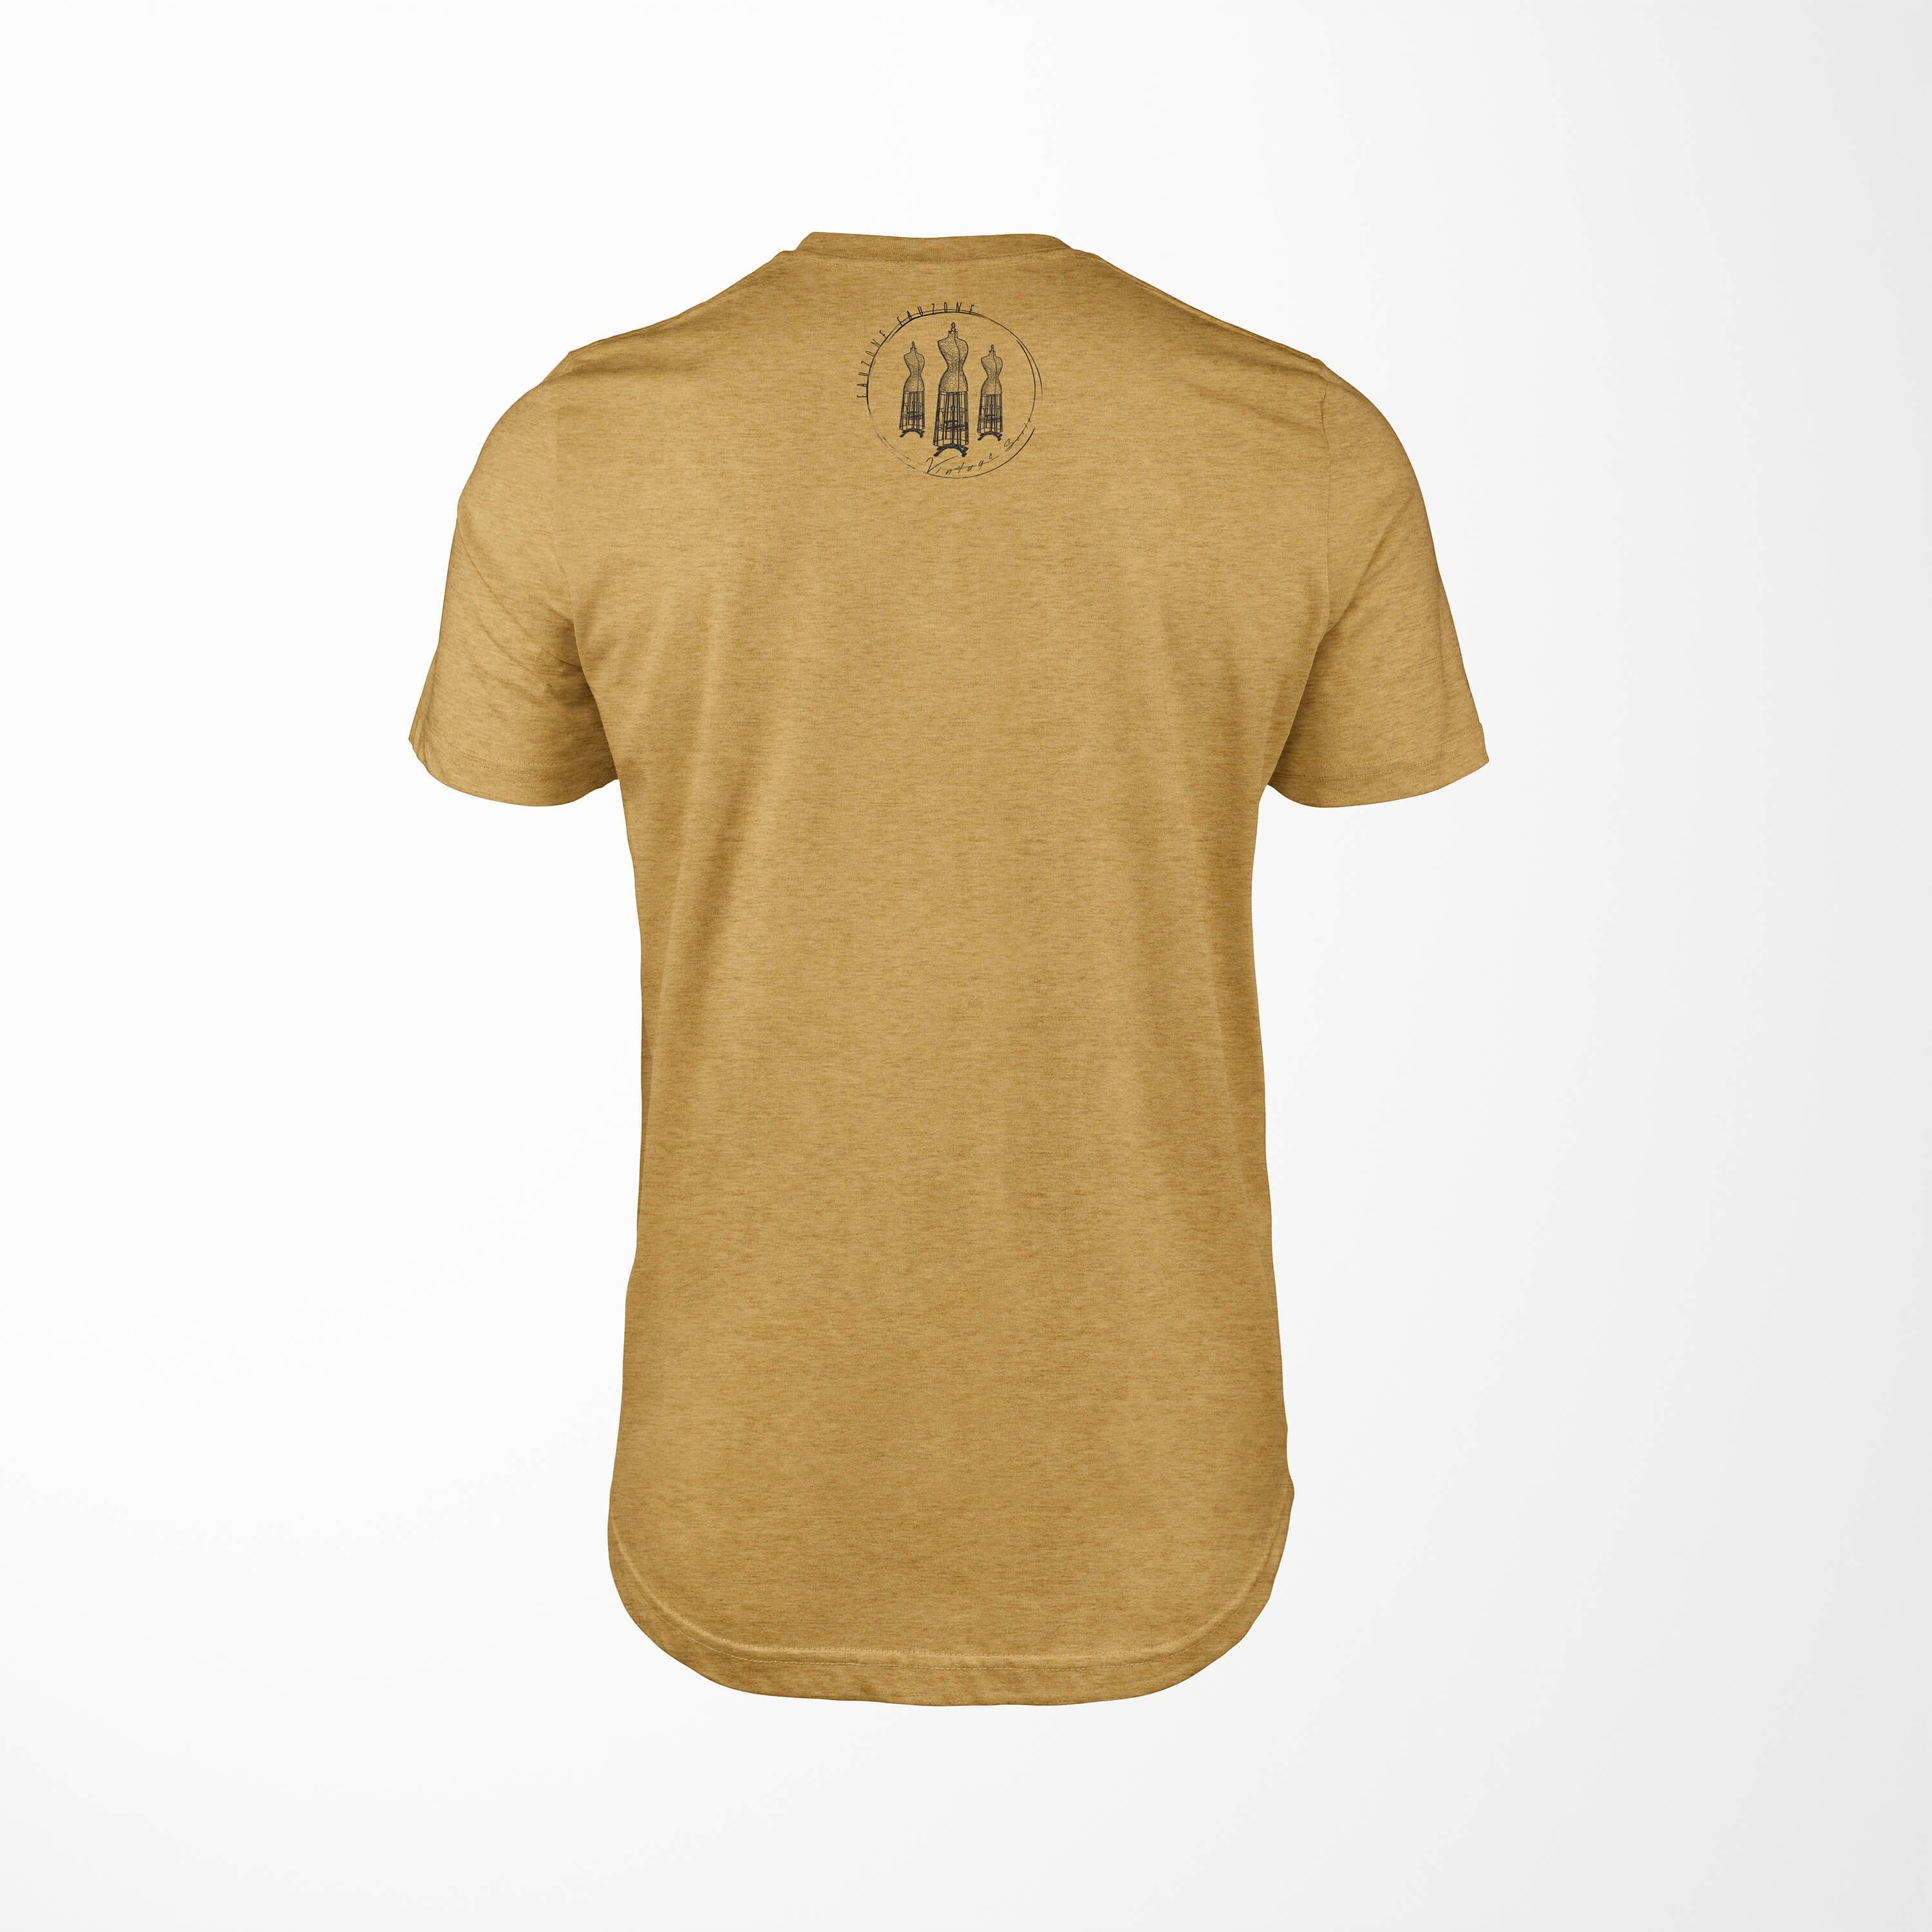 Antique Sinus T-Shirt Herren Vintage Art T-Shirt Gold Kleiderform